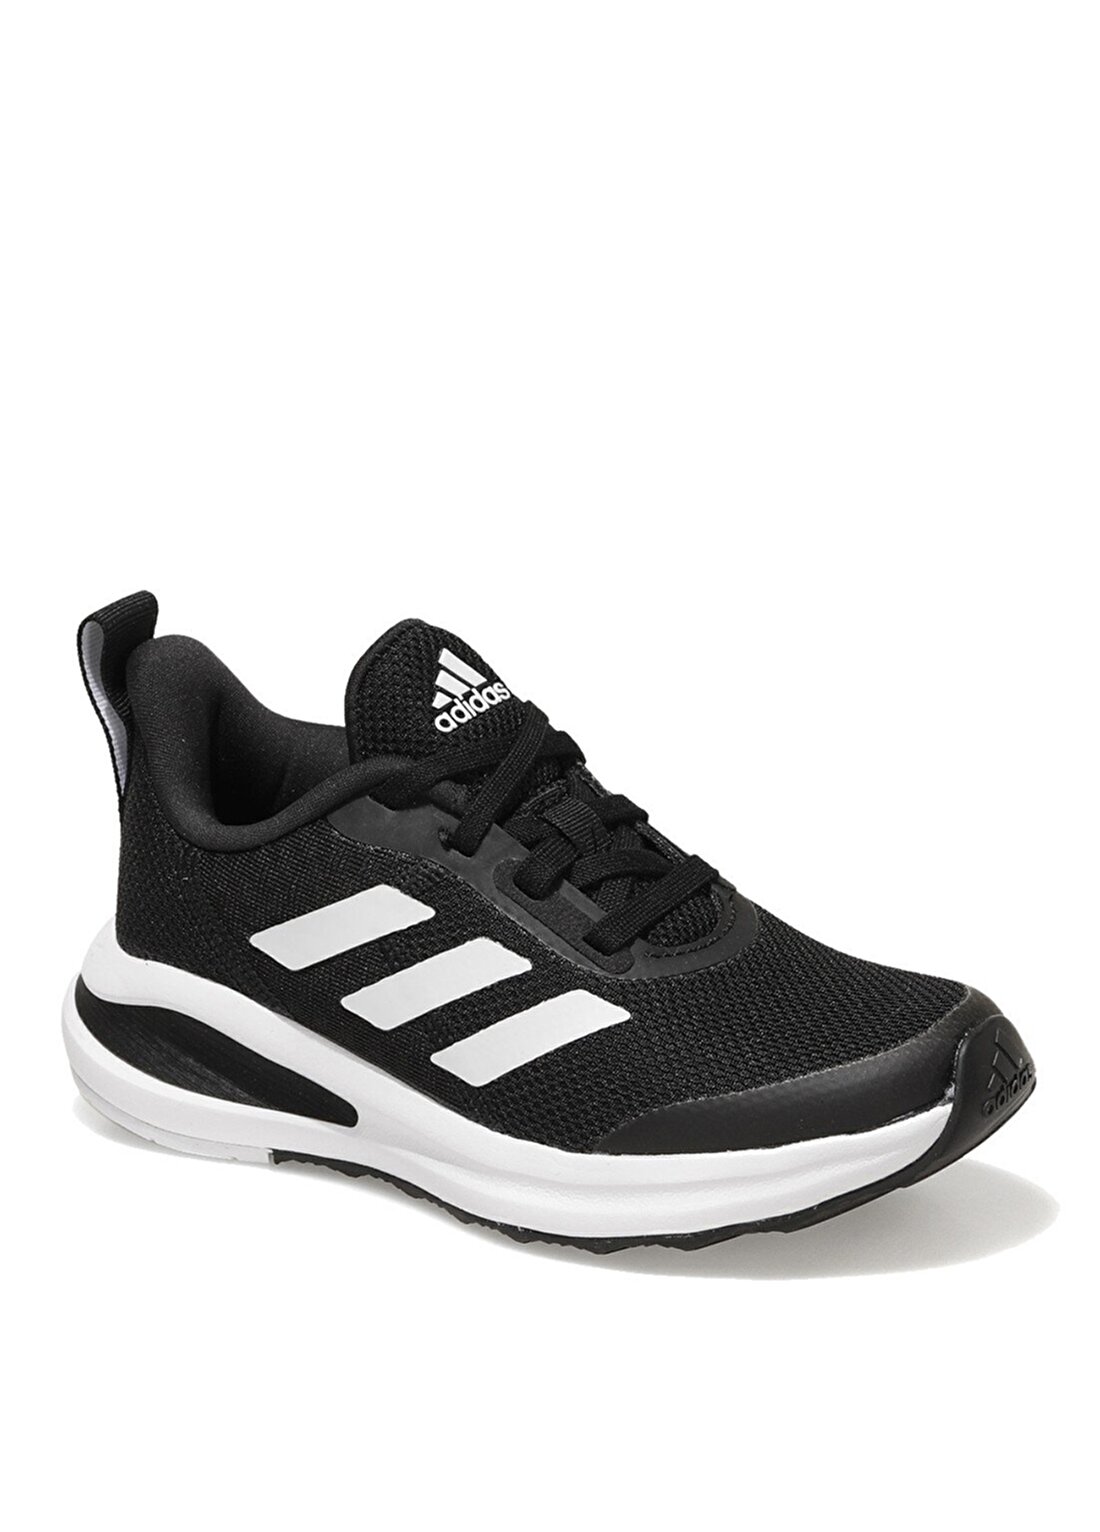 Adidas FW3719 Fortarun K Siyah - Beyaz Yürüyüş Ayakkabısı